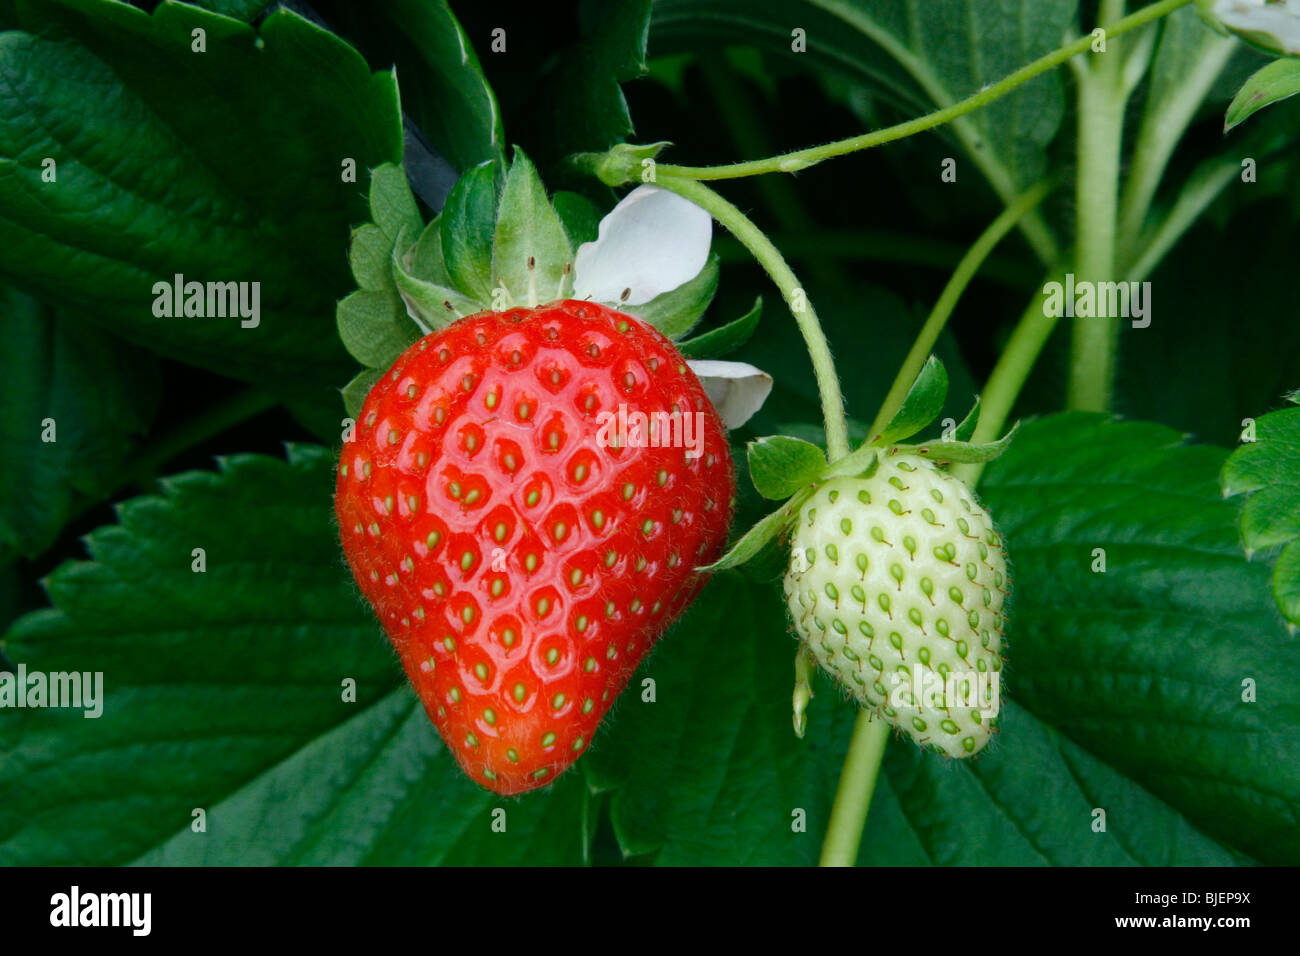 Nahaufnahme einer reifen und einer unreifen Erdbeere, die in einem Fleck,  Fife, Schottland, wächst Stockfotografie - Alamy